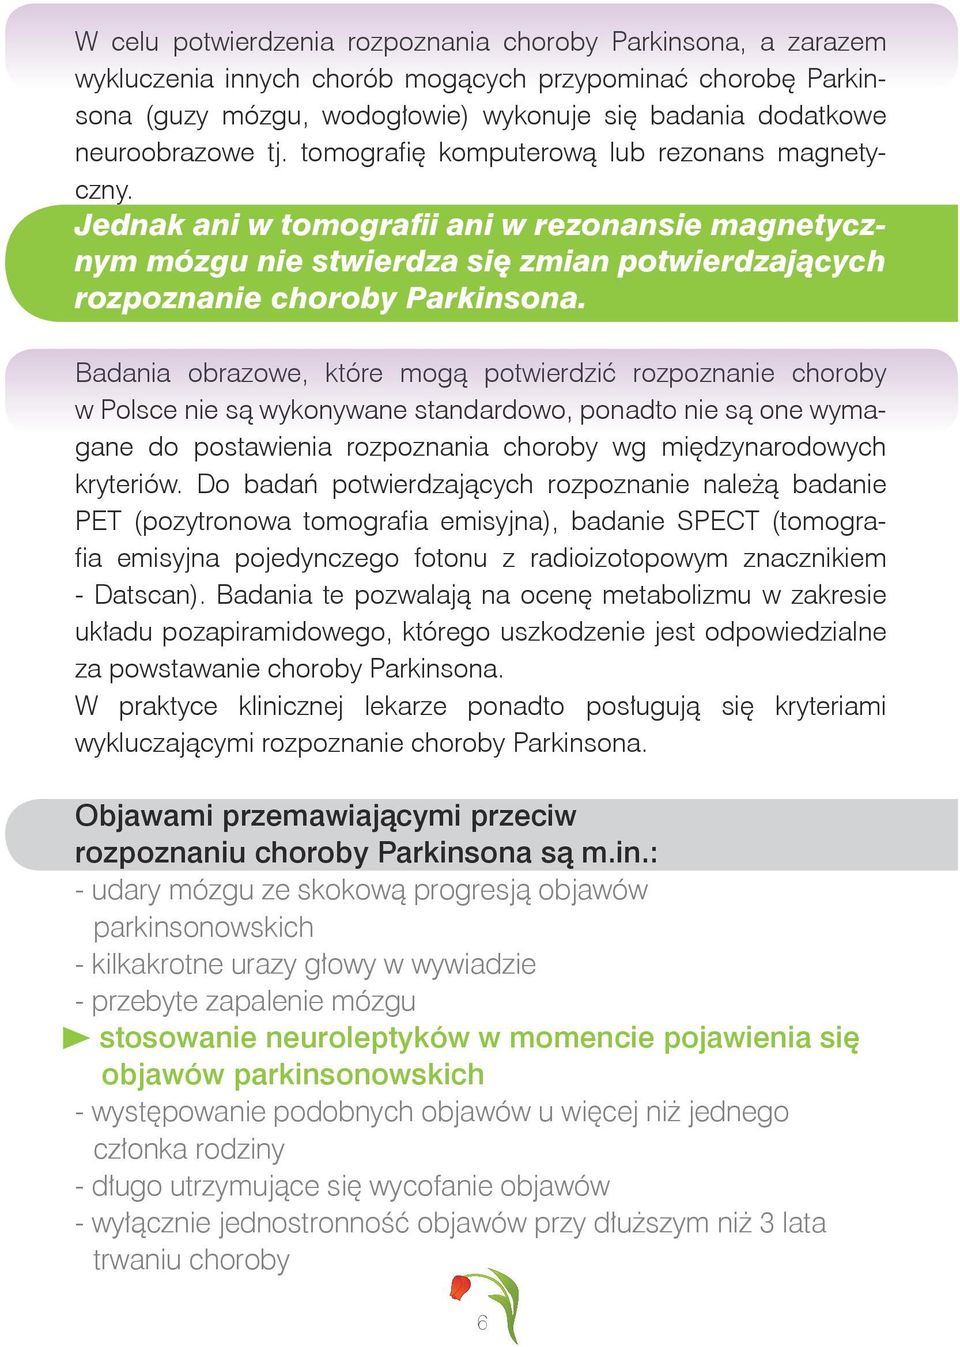 Badania obrazowe, które mogą potwierdzić rozpoznanie choroby w Polsce nie są wykonywane standardowo, ponadto nie są one wymagane do postawienia rozpoznania choroby wg międzynarodowych kryteriów.